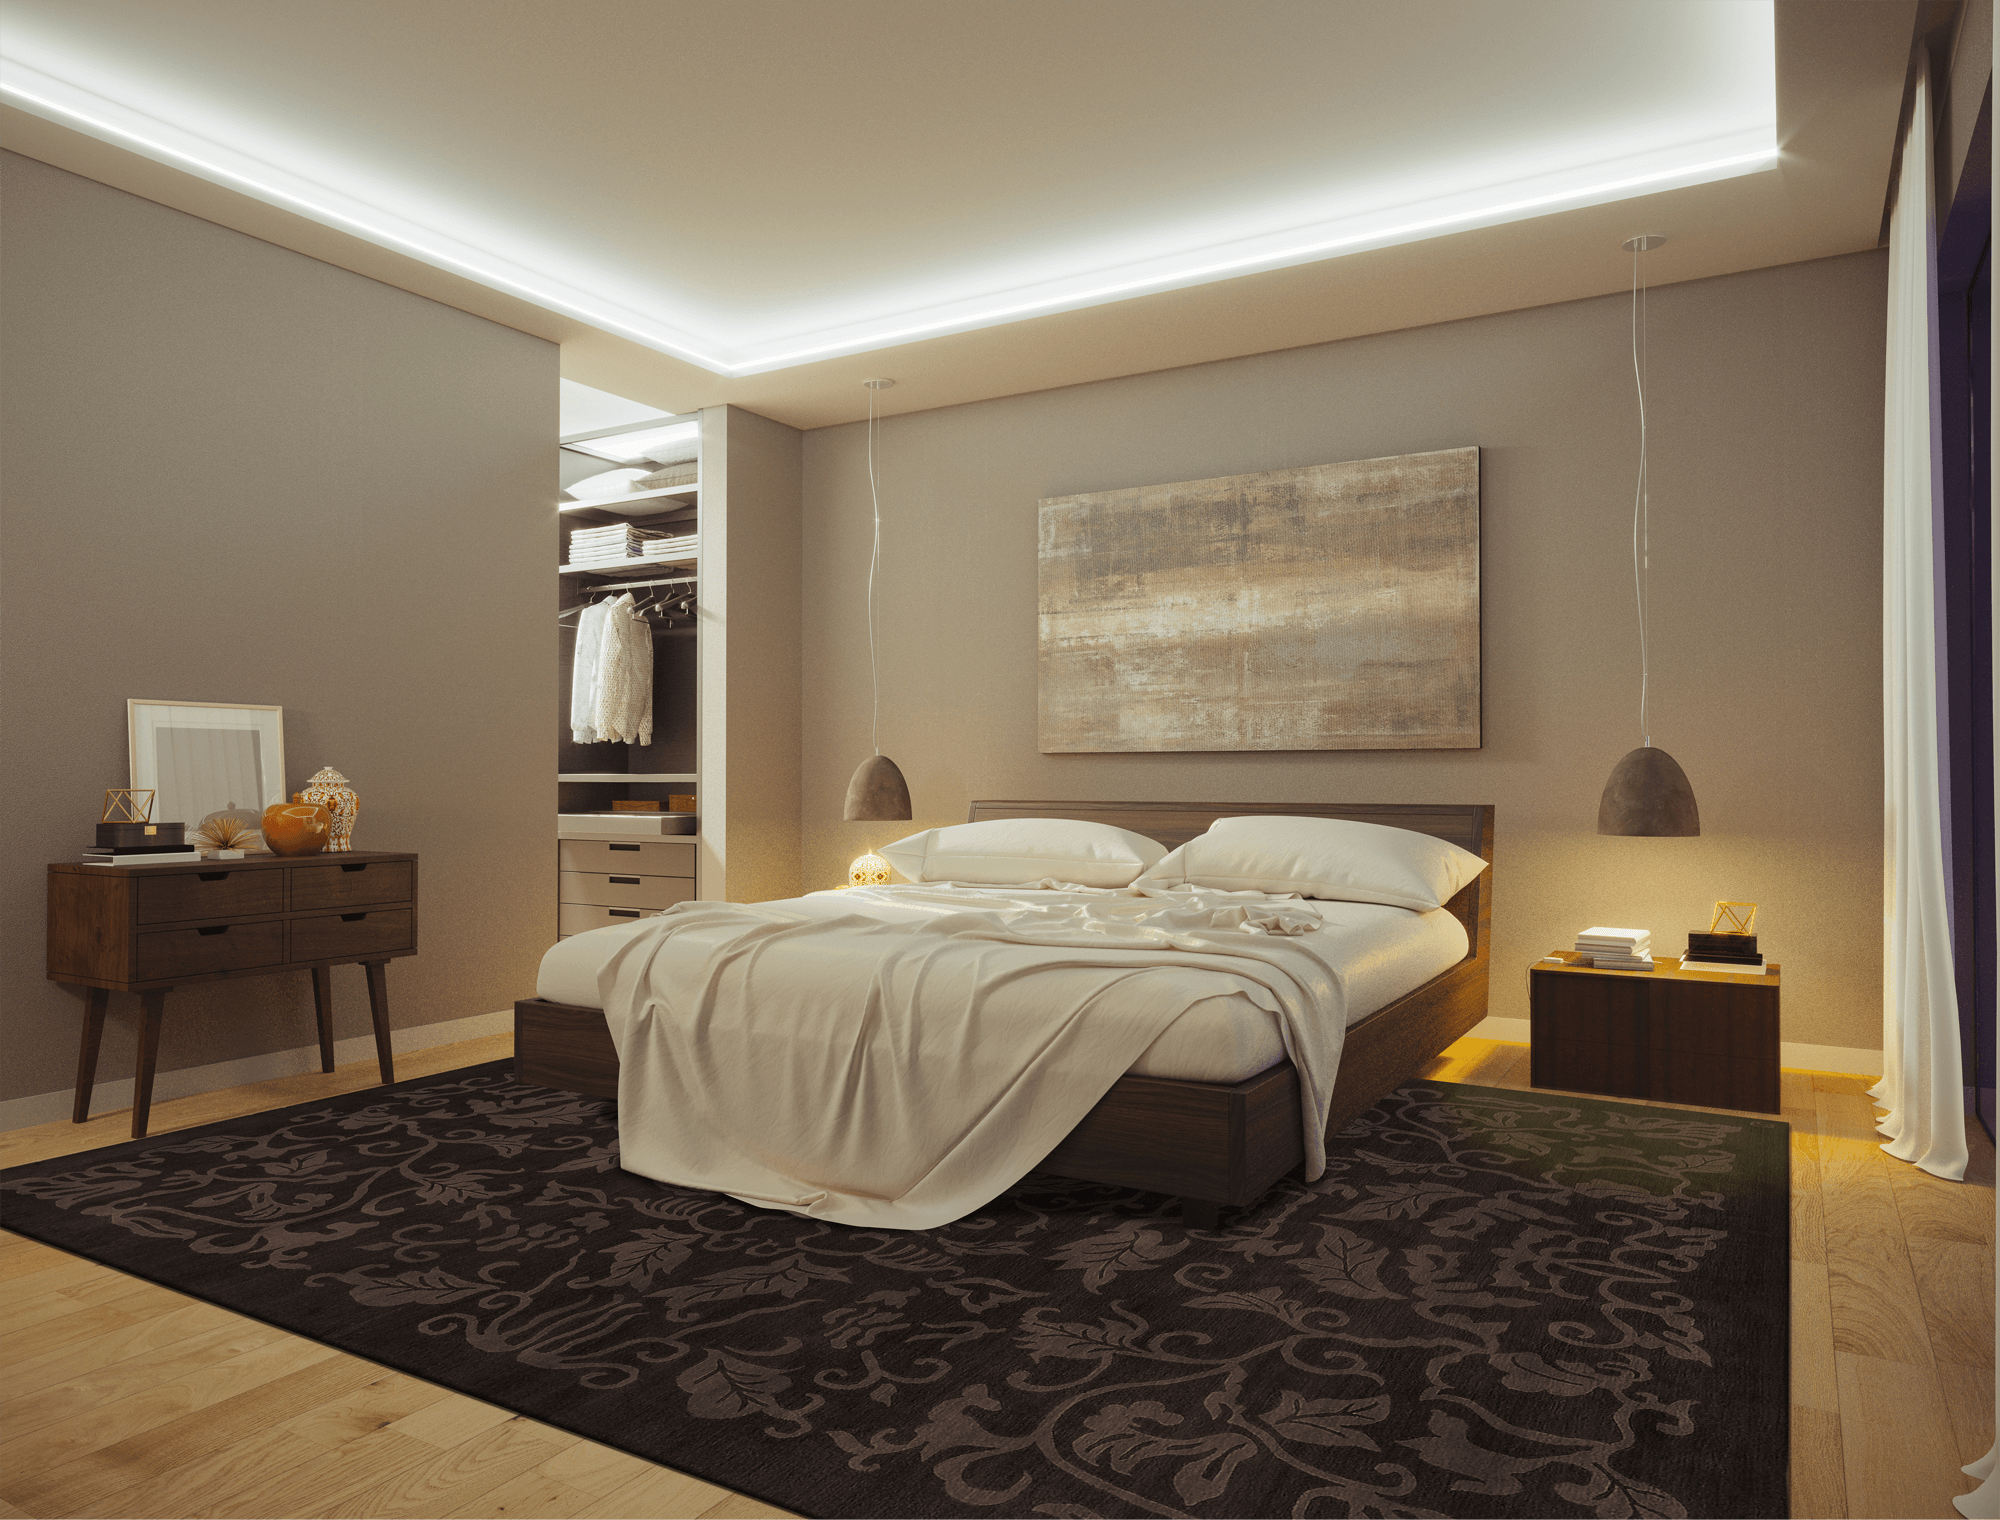 Schlafzimmer mit Geba Teppich "Namur brown" - Geba Teppich